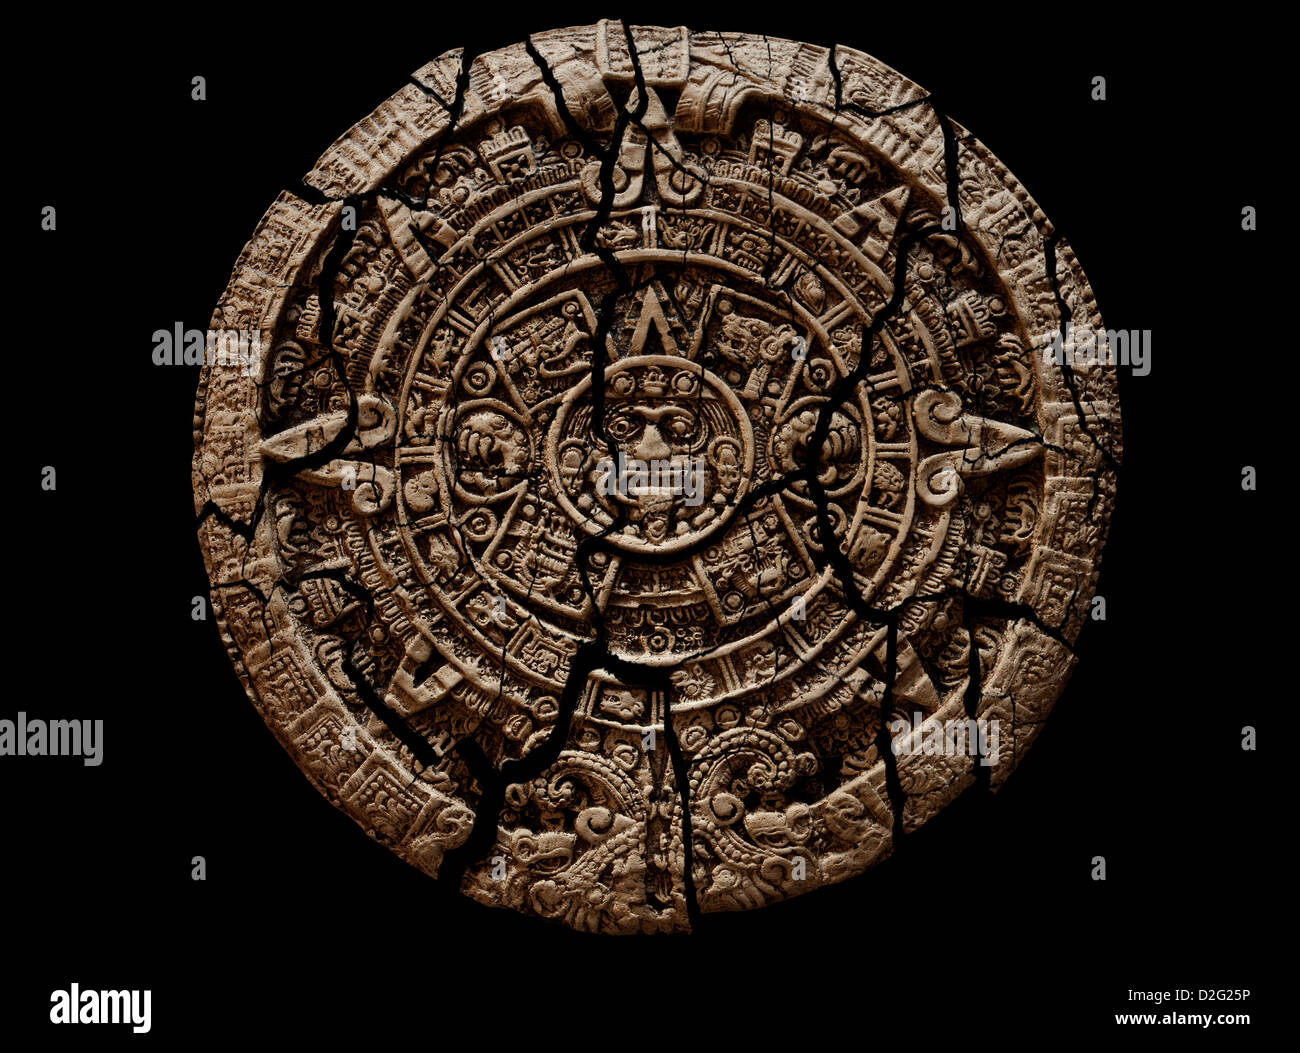 12.2005 et tablette de pierre calendrier maya en ruine sur fond noir. Décoration Banque D'Images